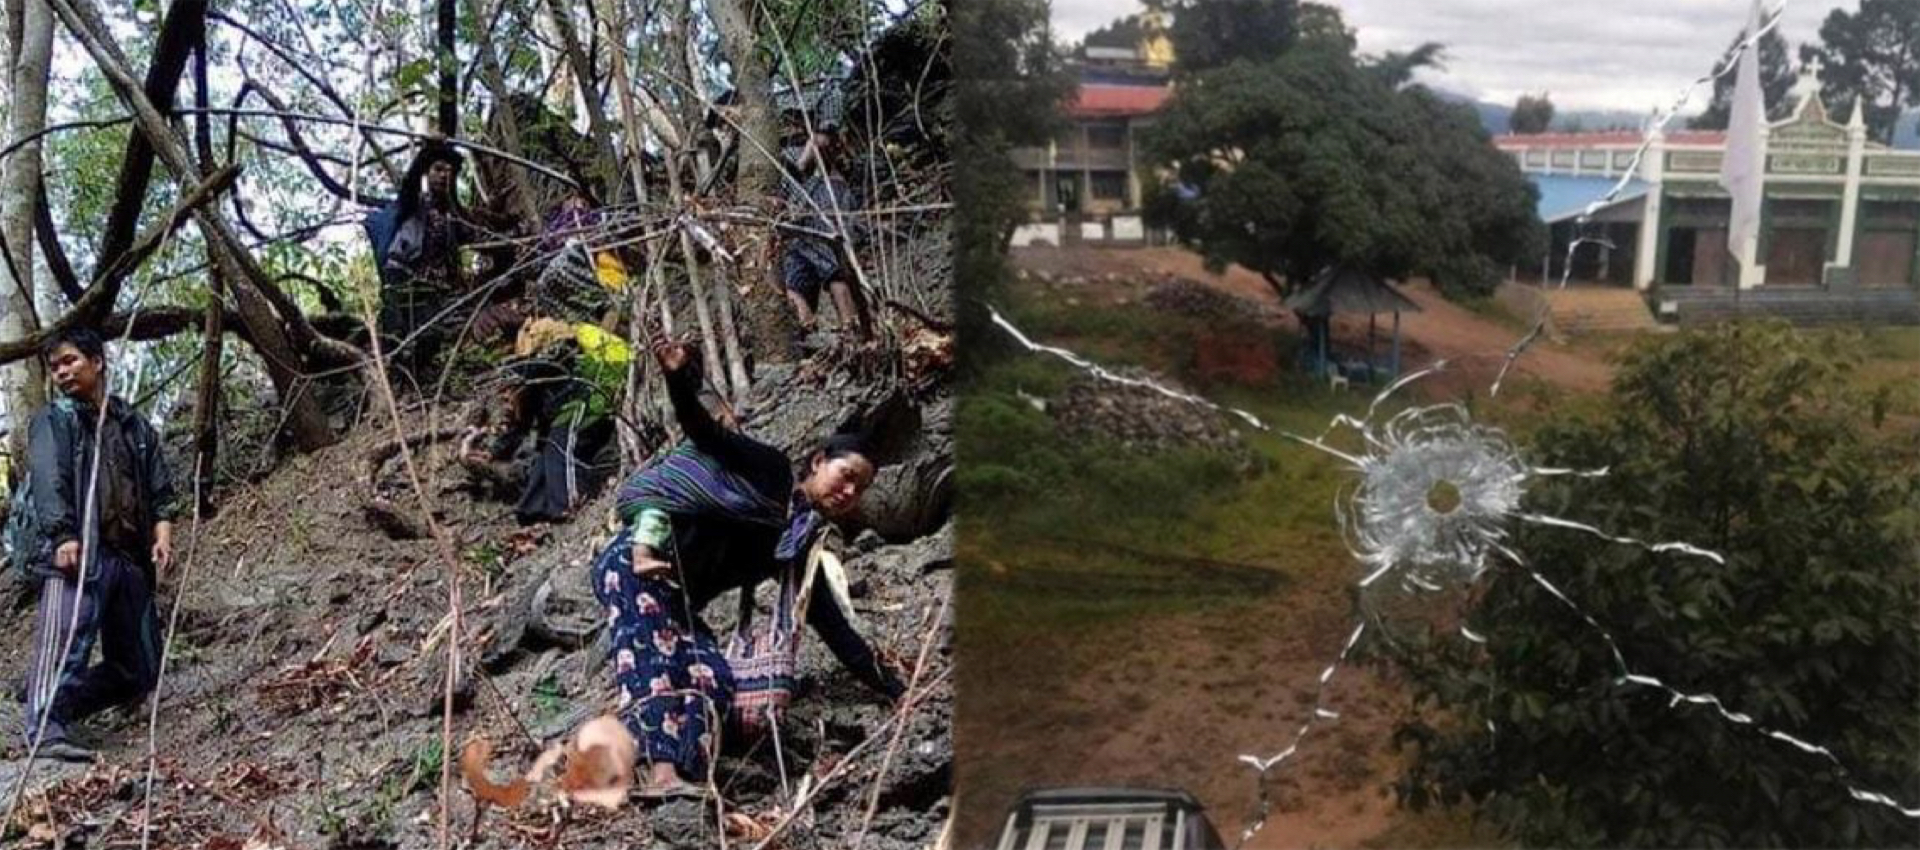 친주 민닷이 미얀마군에 넘어가자 주민들이 필사적으로 달아나고 있다. 아이를 업고 위태로운 피난길에 오른 한 친족  여성(왼쪽), 총탄이 뚫고 지나간 민닷의 한 교회 유리창. 사진 모두 주민 페이스북 을 현지 언론이 인용